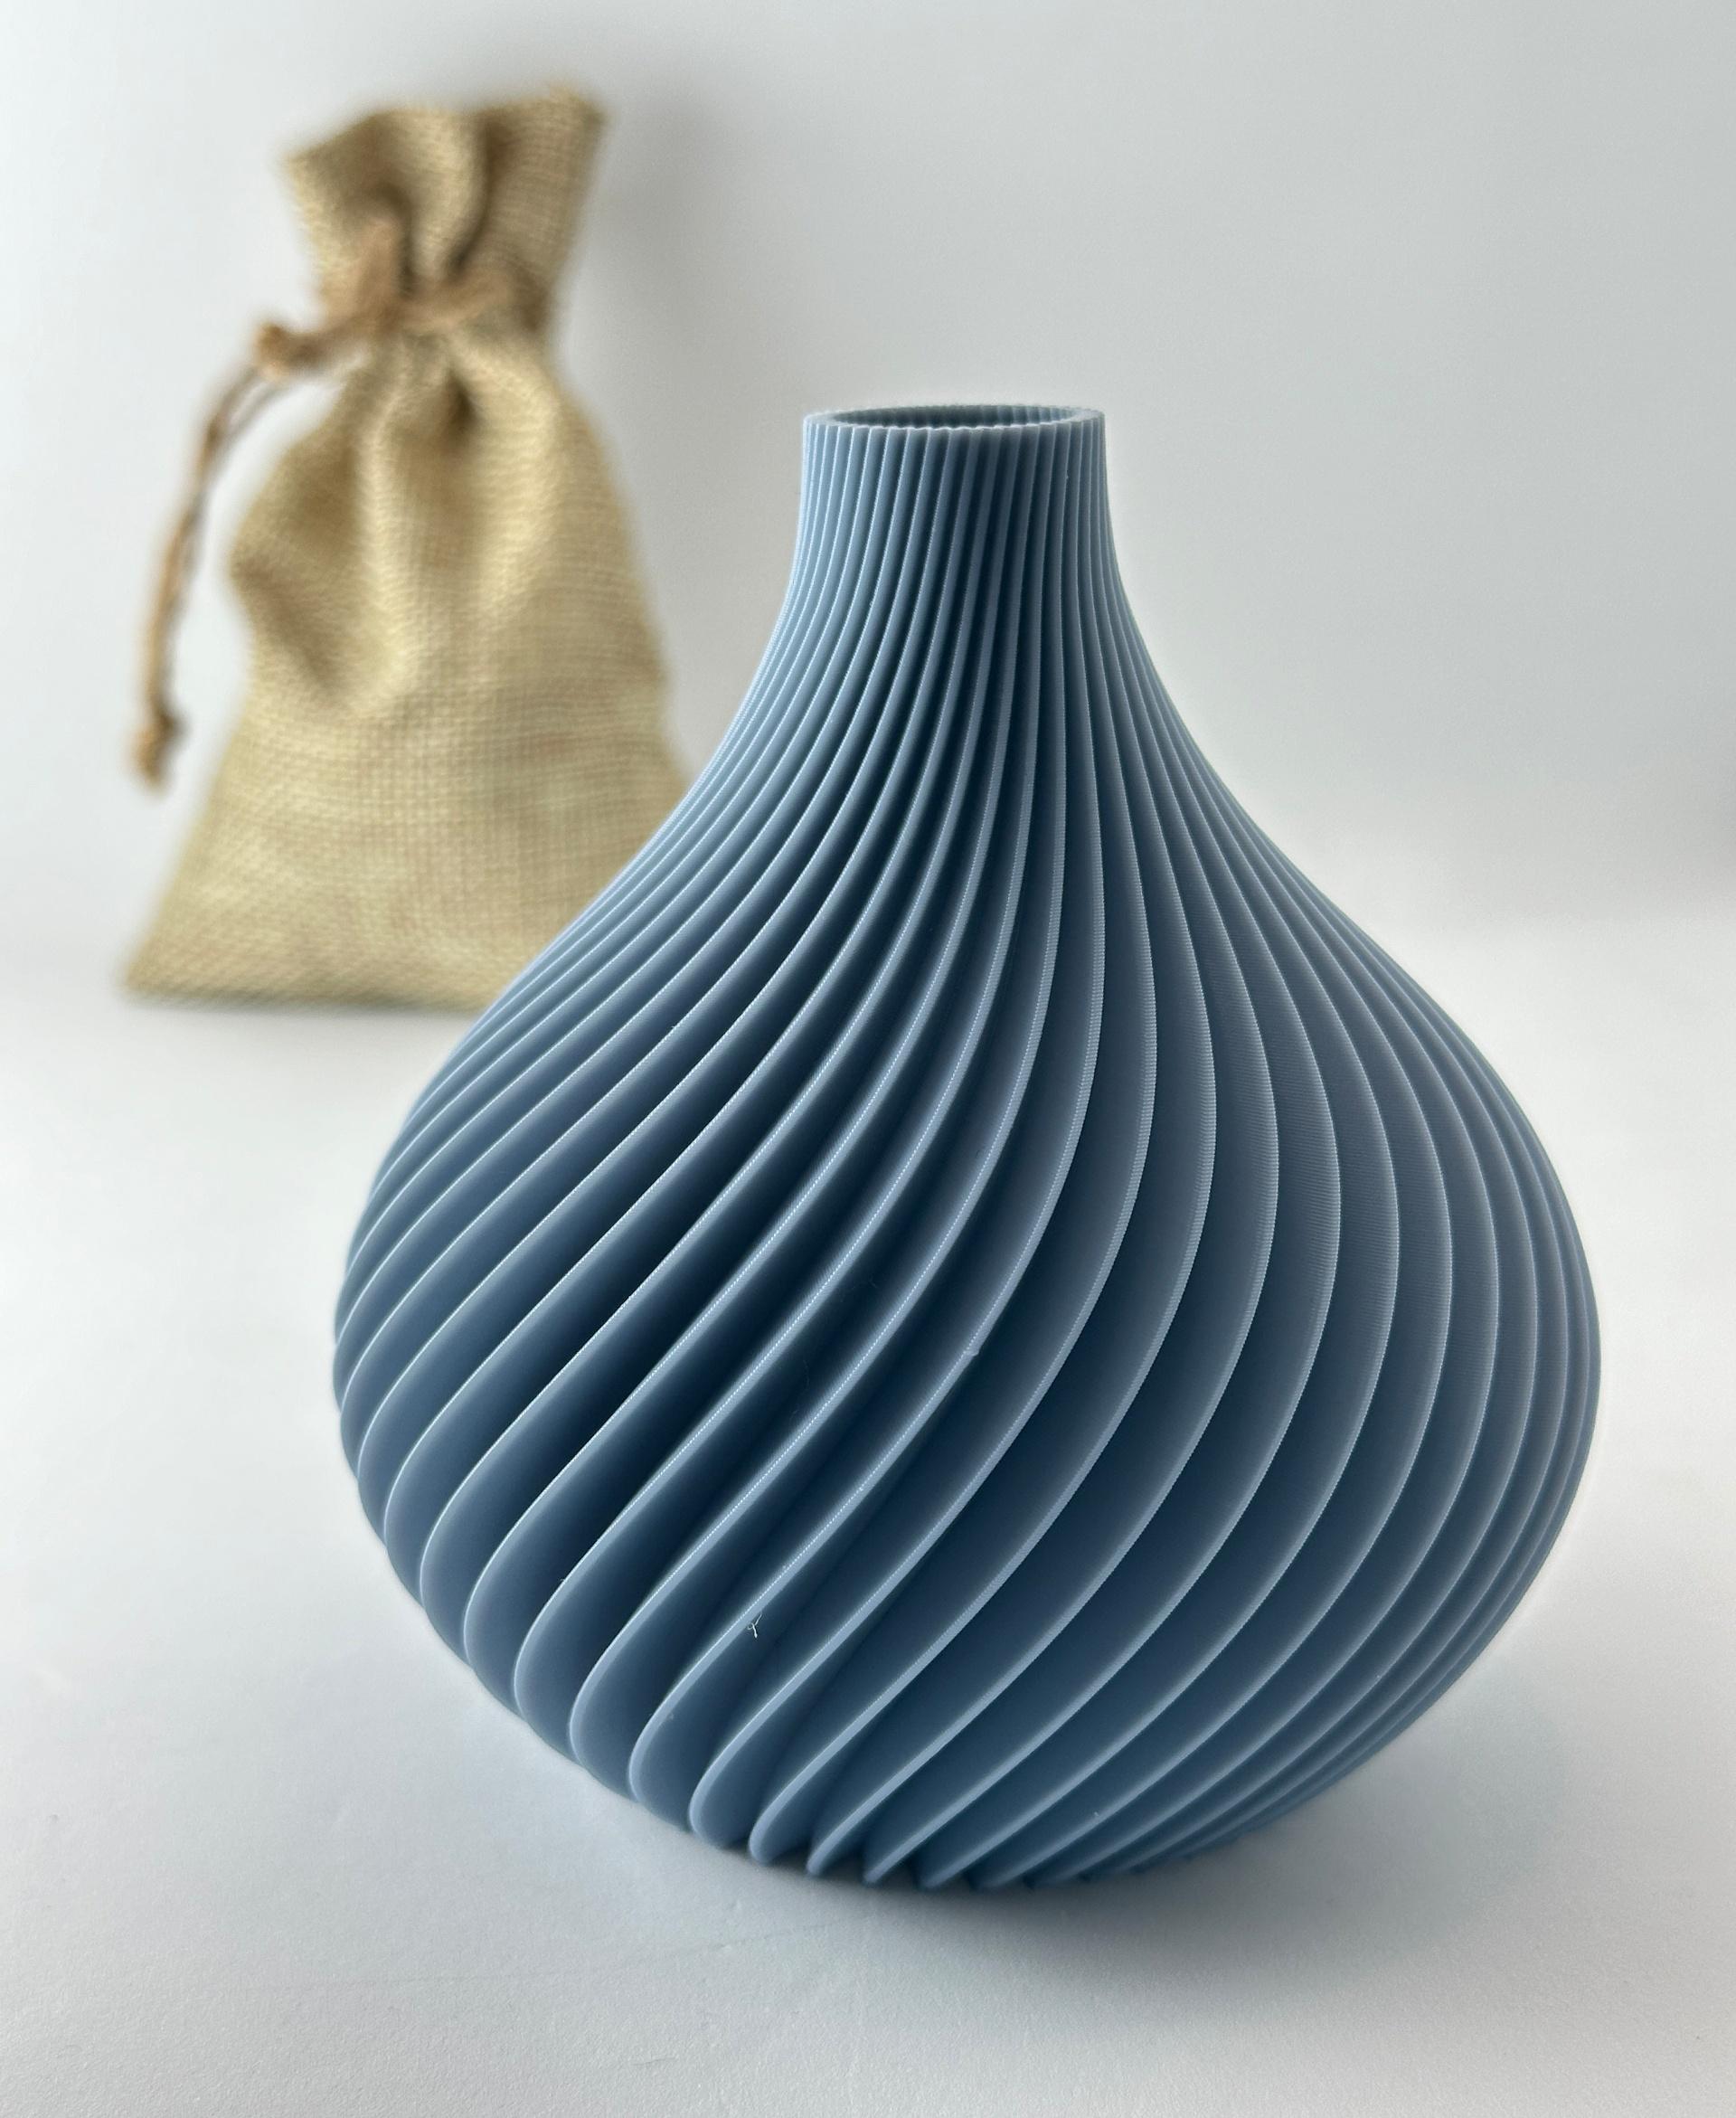 The Scand Vase - A Botany Chic Vase 3d model